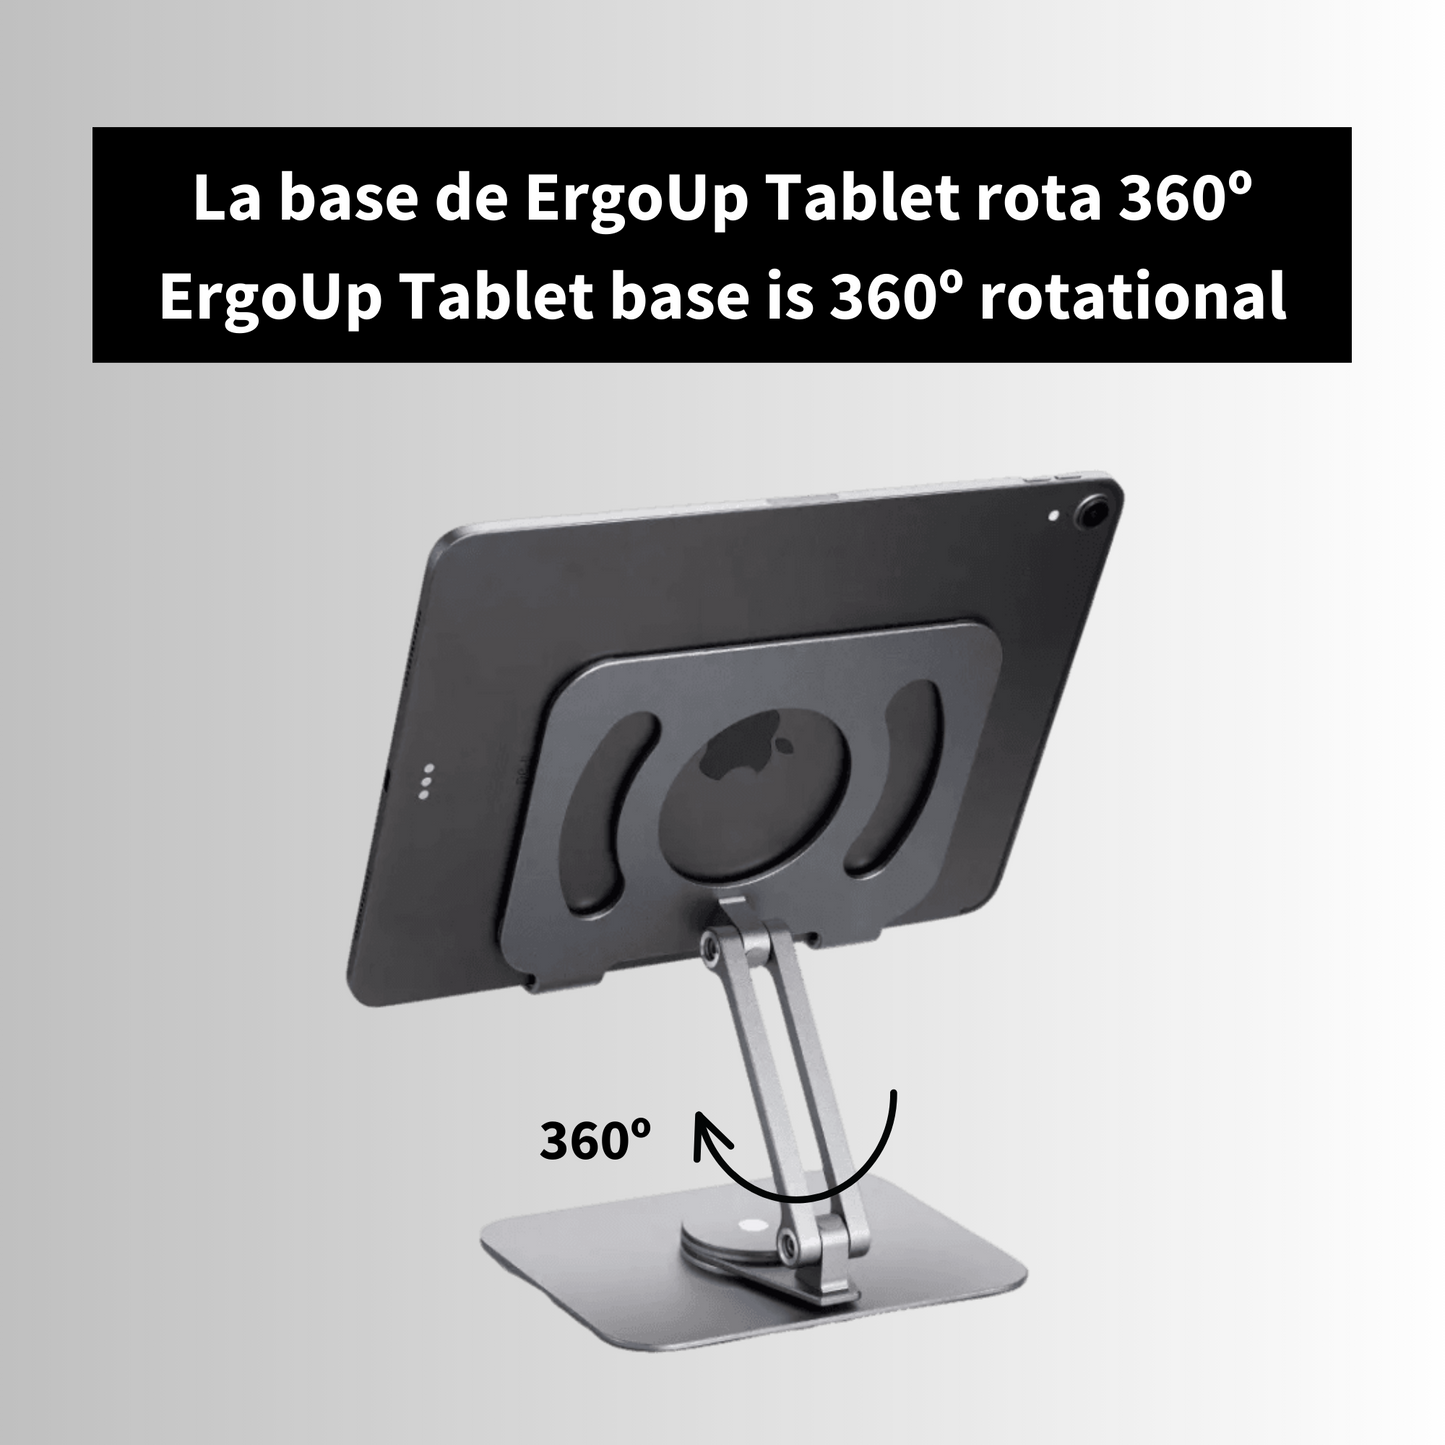 ErgoUp Tablet